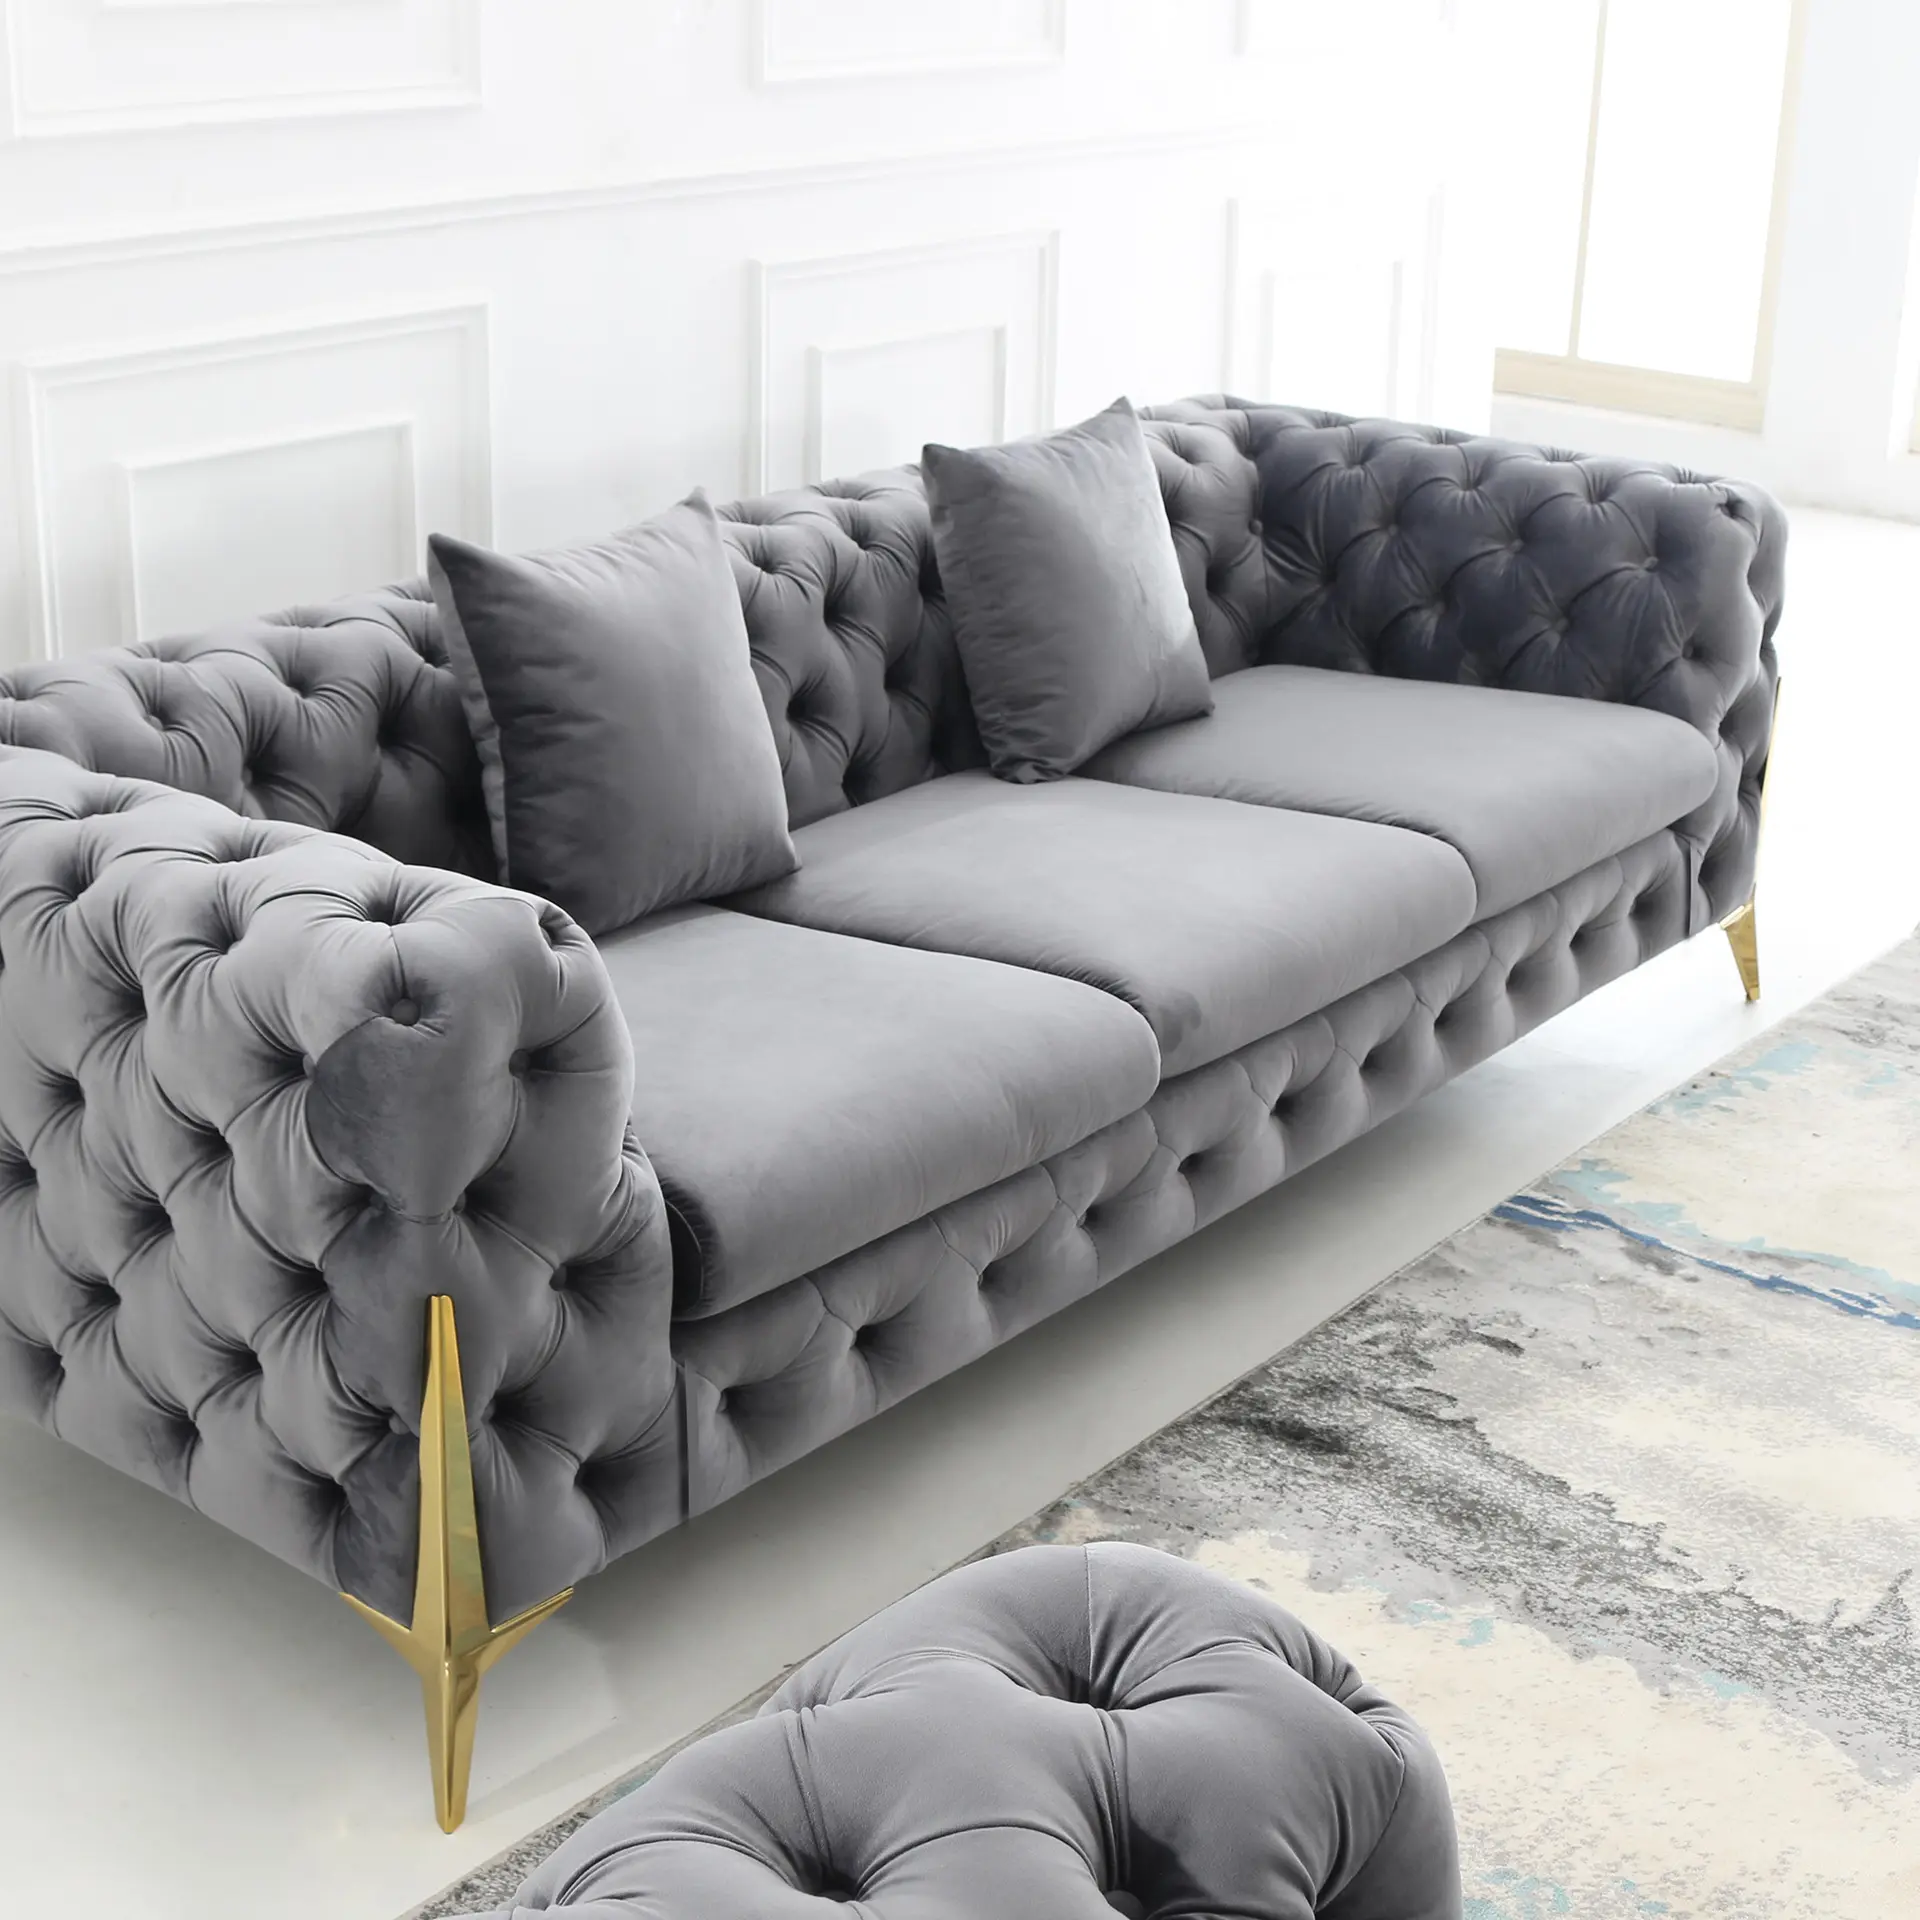 Ensembles de meubles de salon modernes de luxe Offre Spéciale faciles à installer canapé canapé convertible en cuir combinaison de canapés canapé fonctionnel